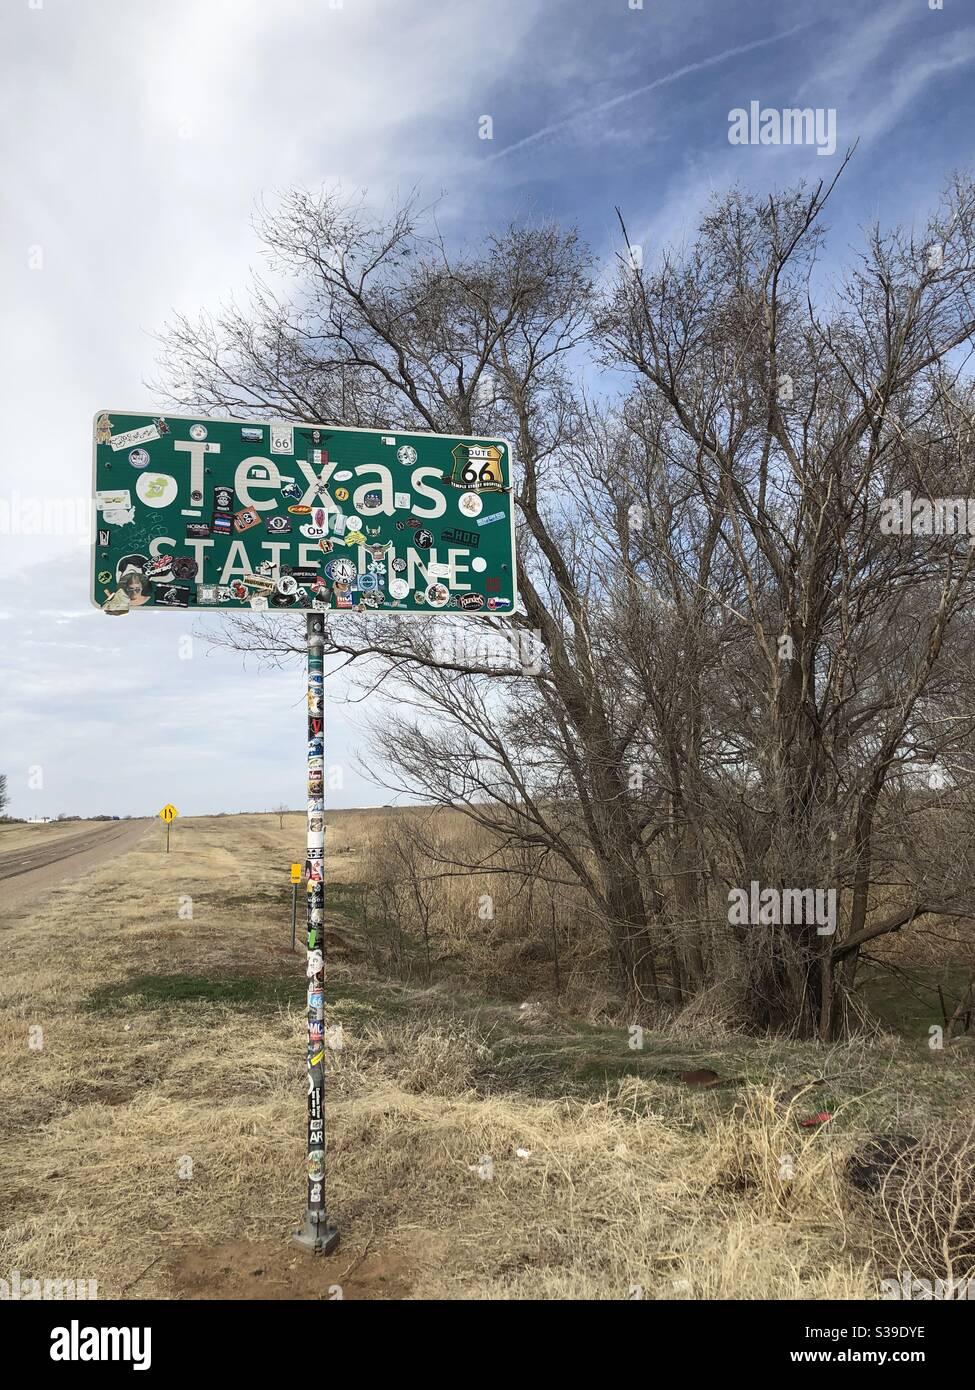 Texas Oklahoma estado como signo Foto de stock